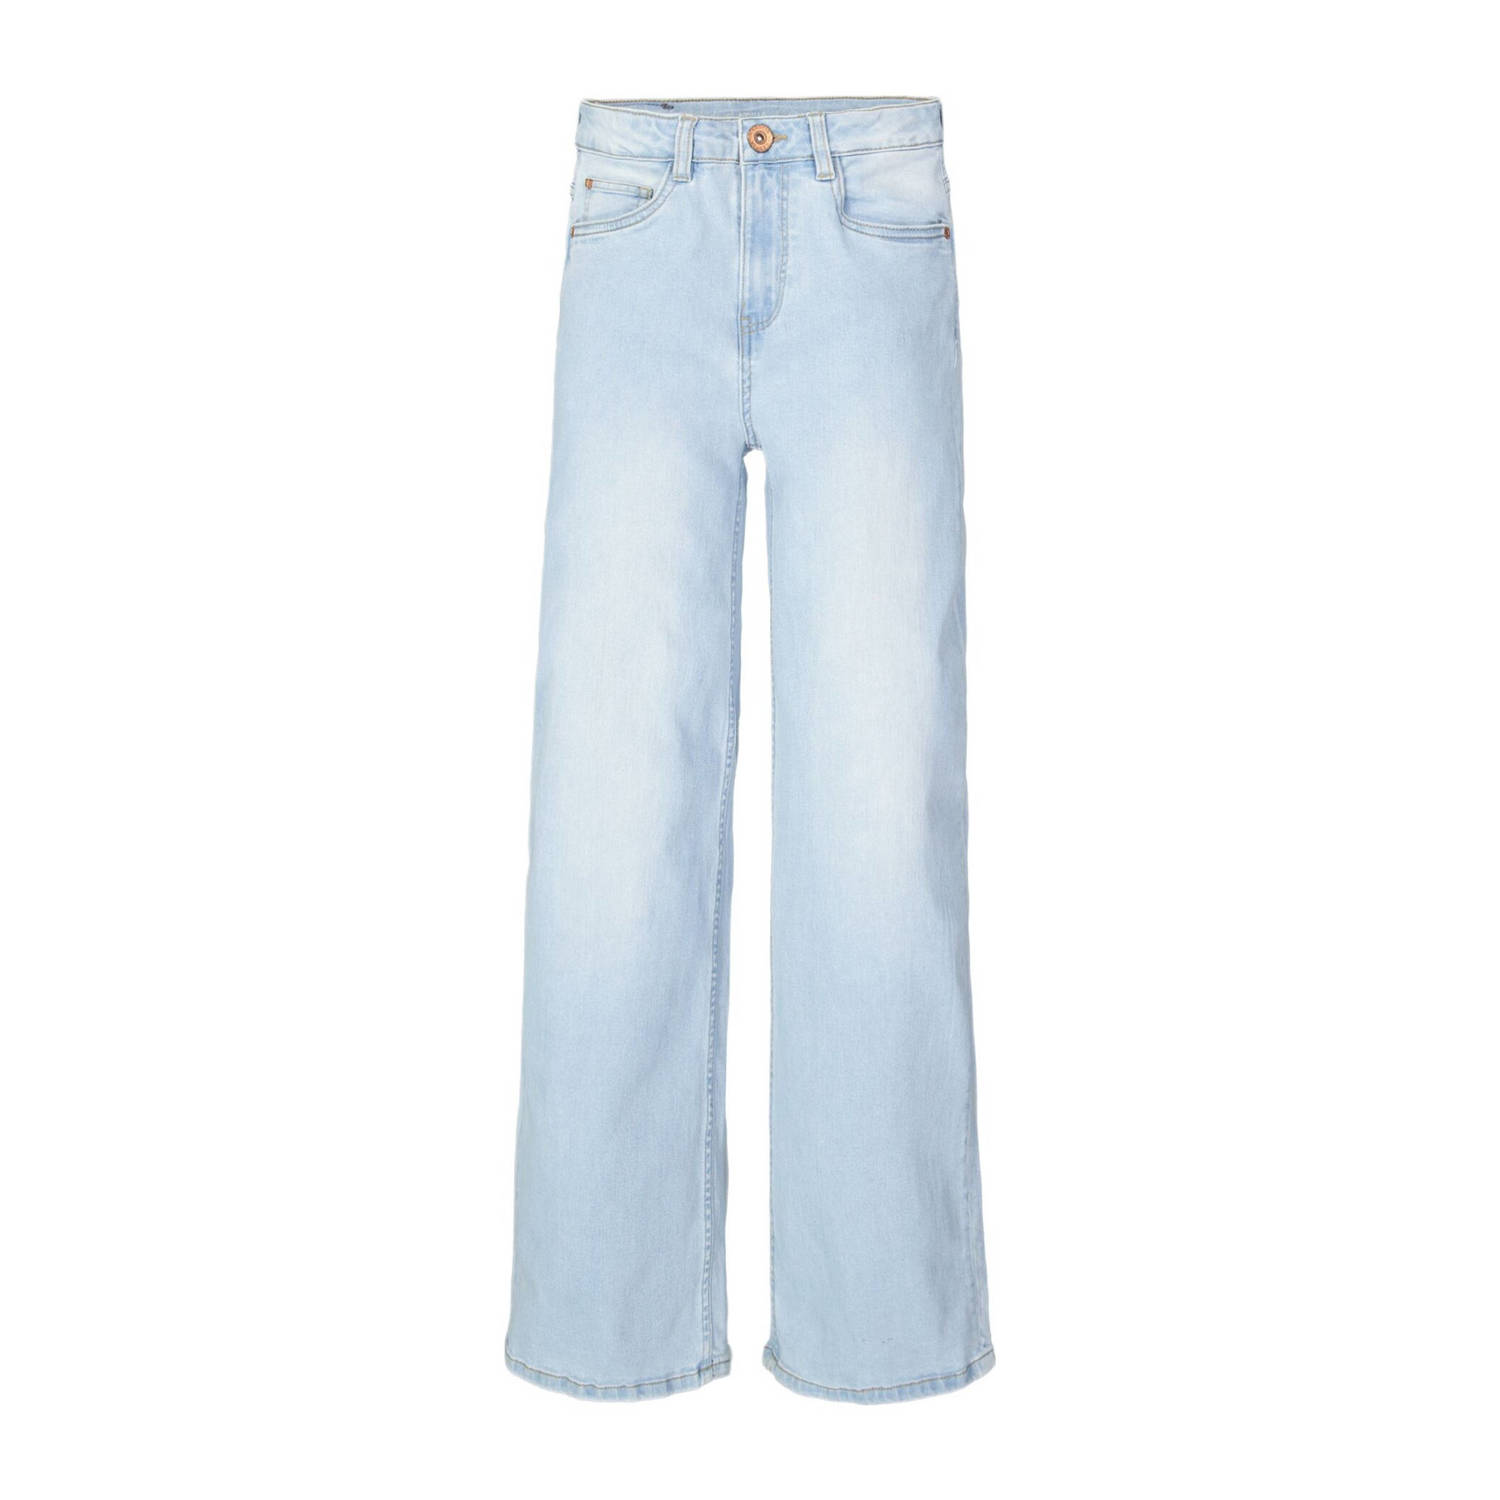 Garcia high waist wide leg jeans Annemay bleached Blauw Meisjes Stretchdenim 158